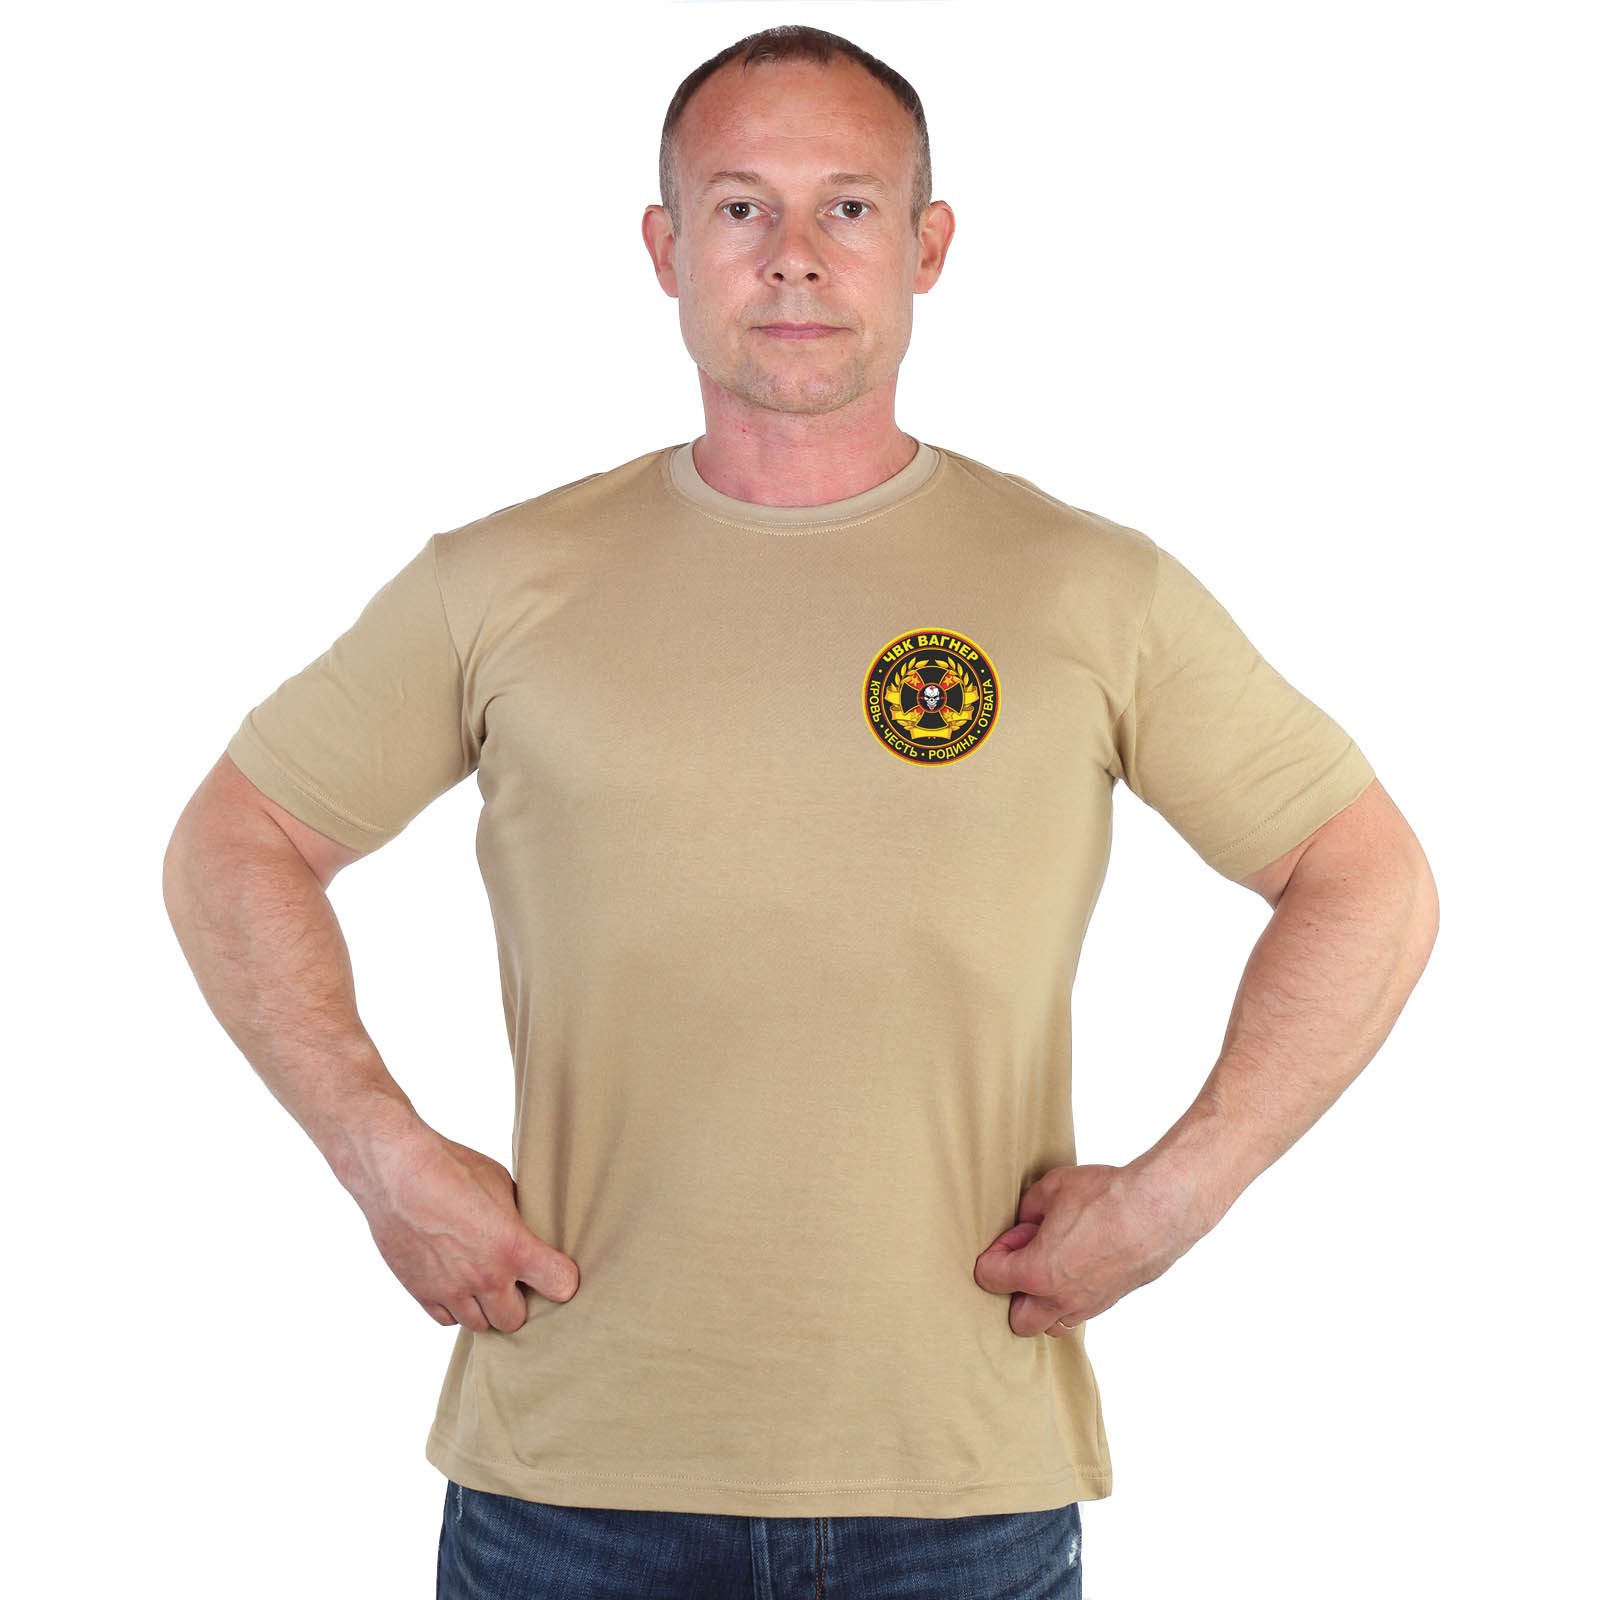 Песочная футболка с термотрансфером ЧВК "Группа Вагнер"